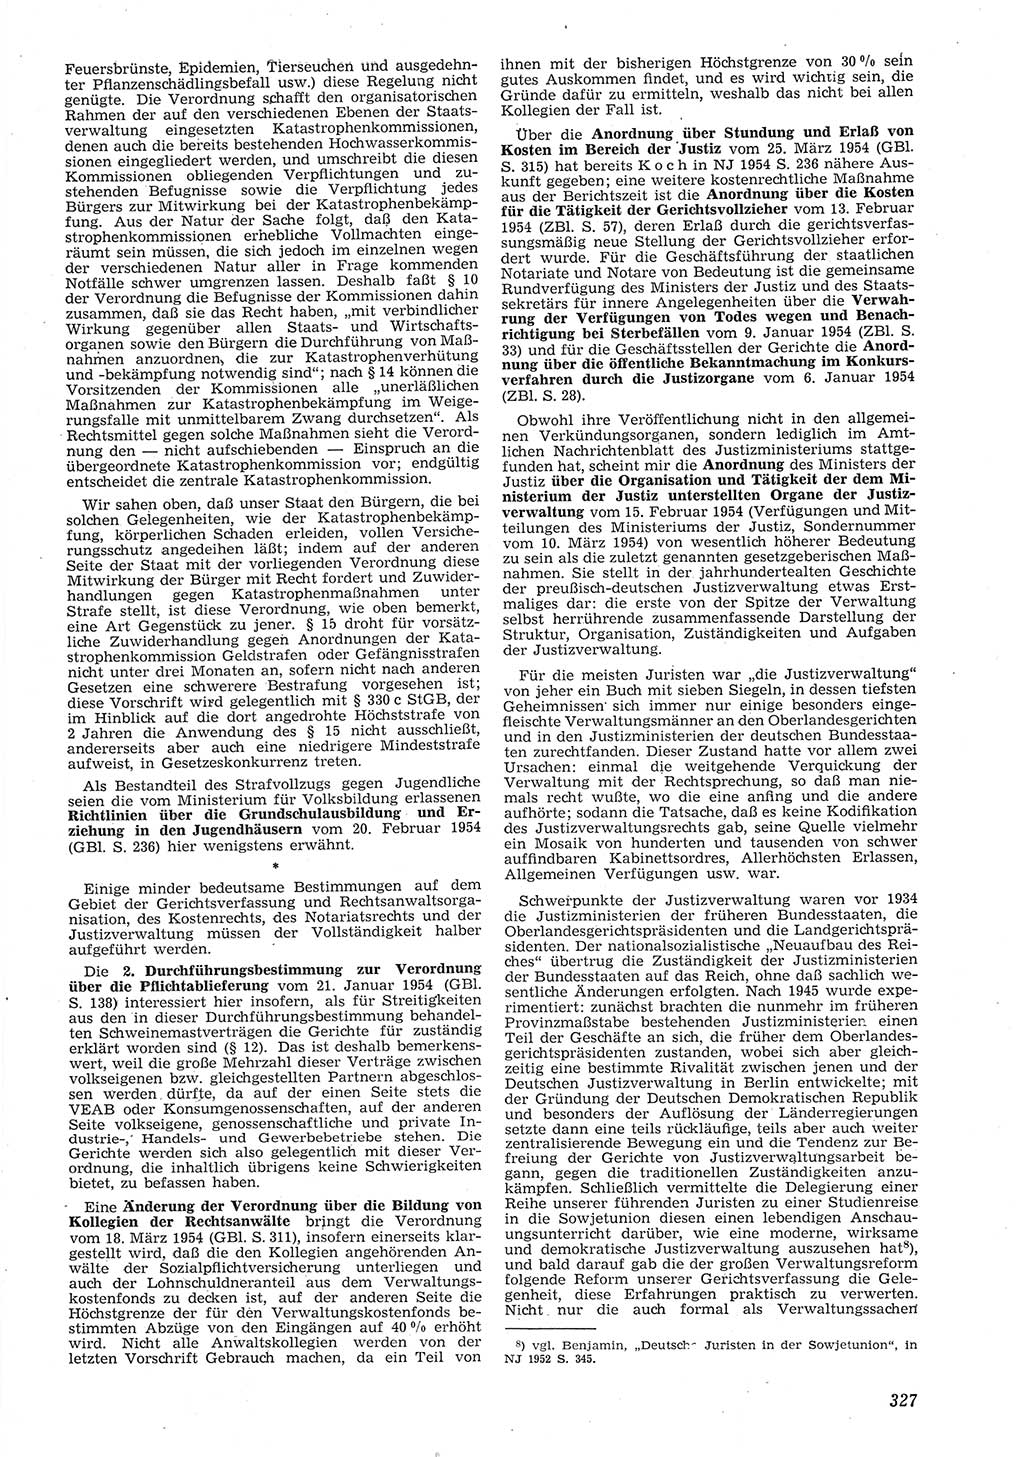 Neue Justiz (NJ), Zeitschrift für Recht und Rechtswissenschaft [Deutsche Demokratische Republik (DDR)], 8. Jahrgang 1954, Seite 327 (NJ DDR 1954, S. 327)